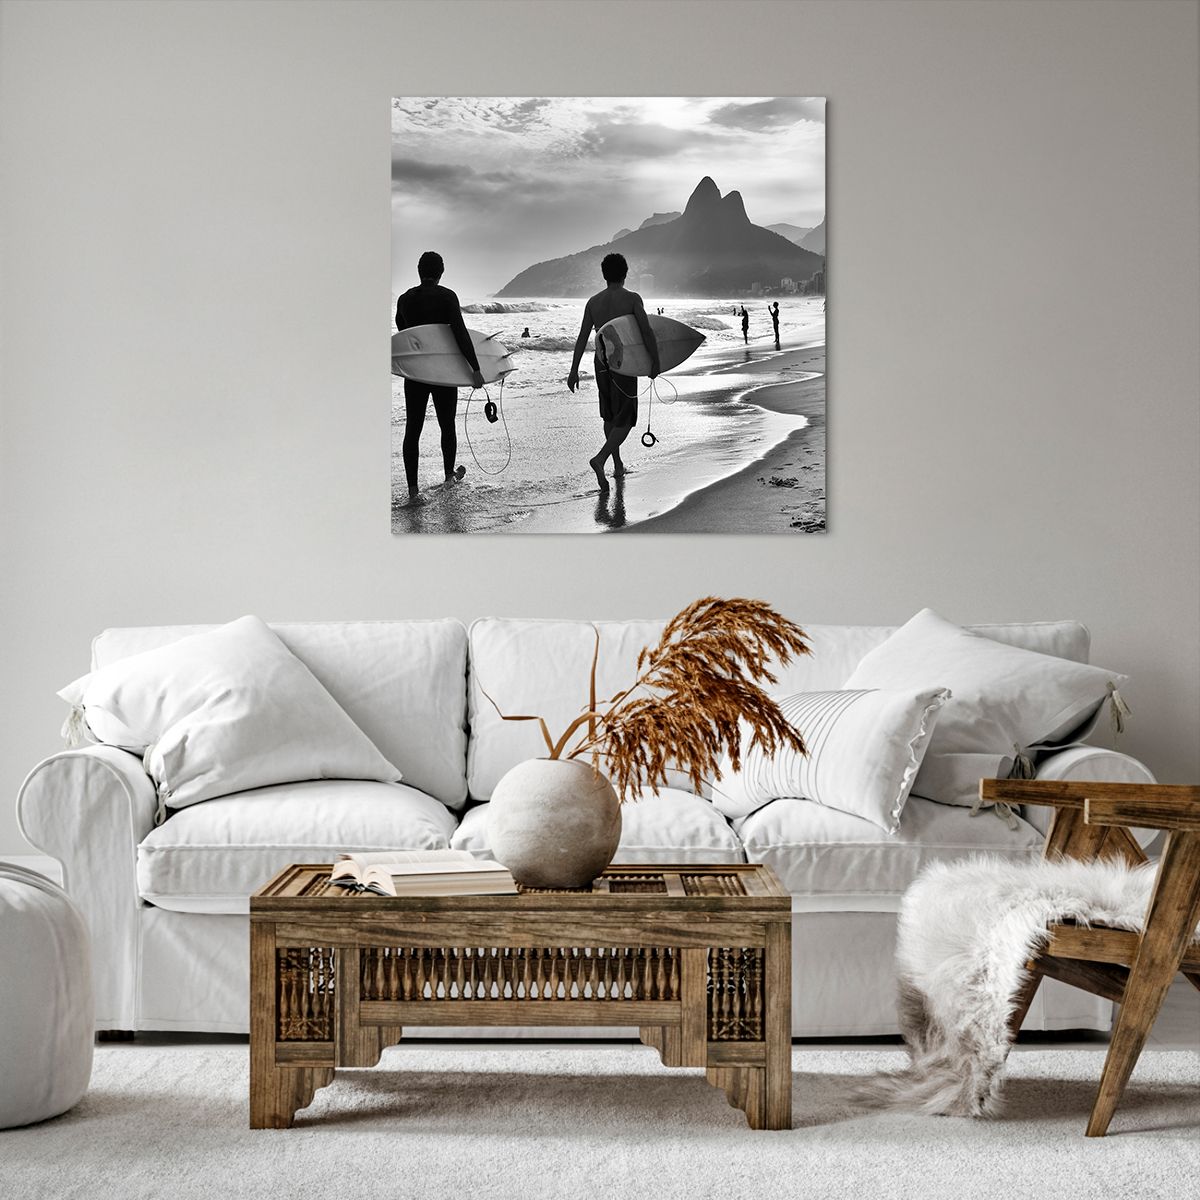 Bild auf Leinwand Surfer, Bild auf Leinwand Brasilien, Bild auf Leinwand Meer, Bild auf Leinwand Strand, Bild auf Leinwand Schwarz Und Weiß